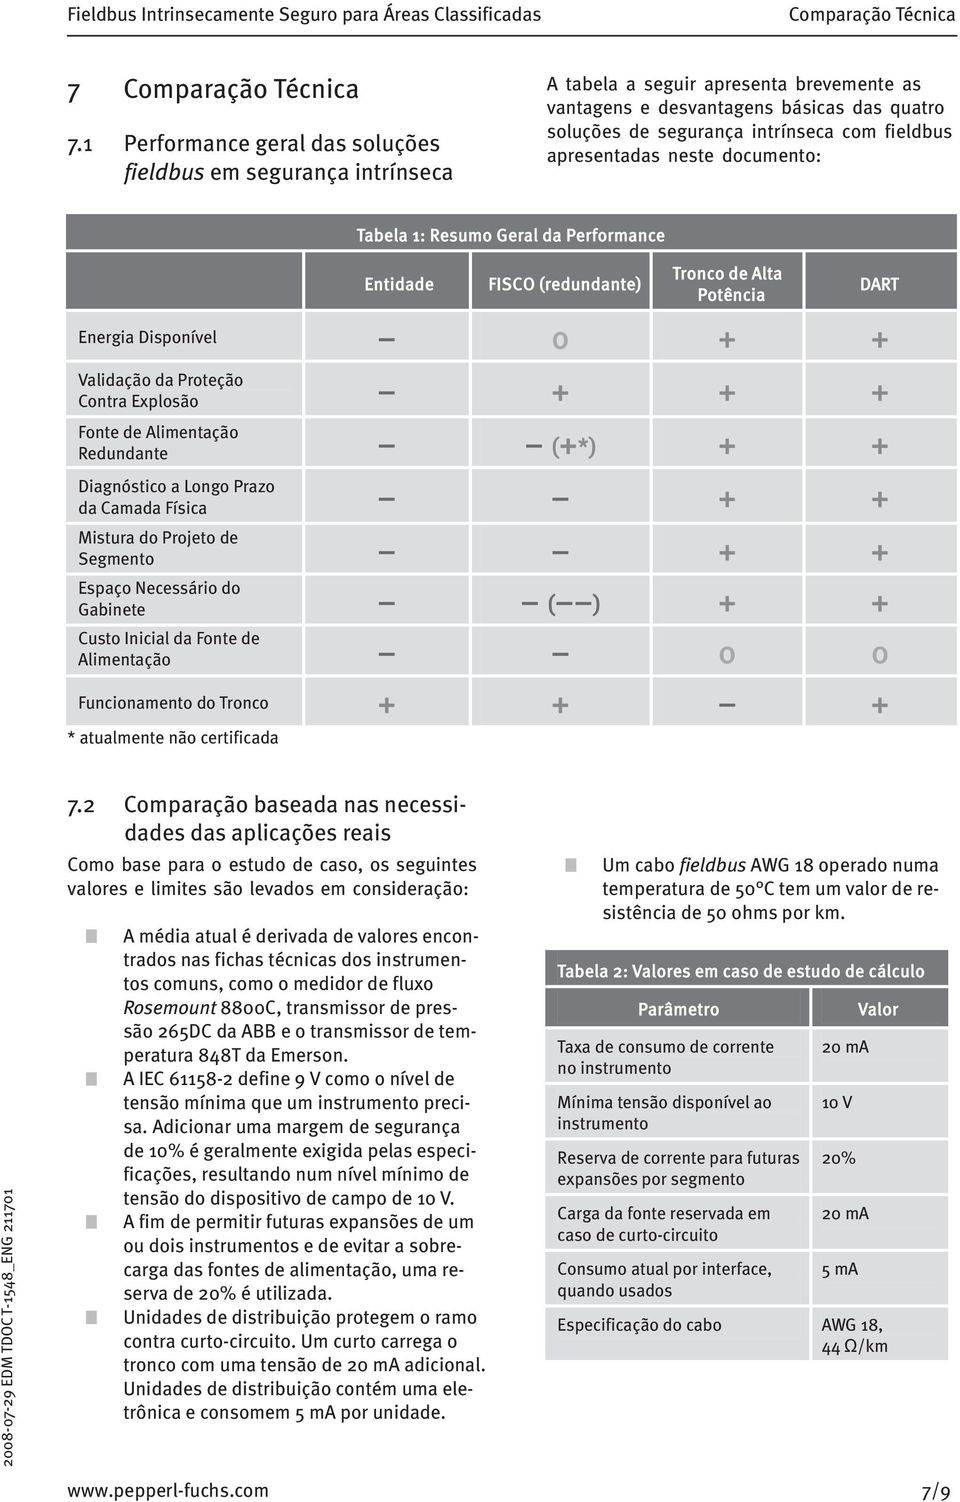 apresentadas neste documento: Tabela 1: Resumo Geral da Performance Entidade FISCO (redundante) Tronco de Alta Potência Energia Disponível 0 + + Validação da Proteção Contra Explosão + + + Fonte de